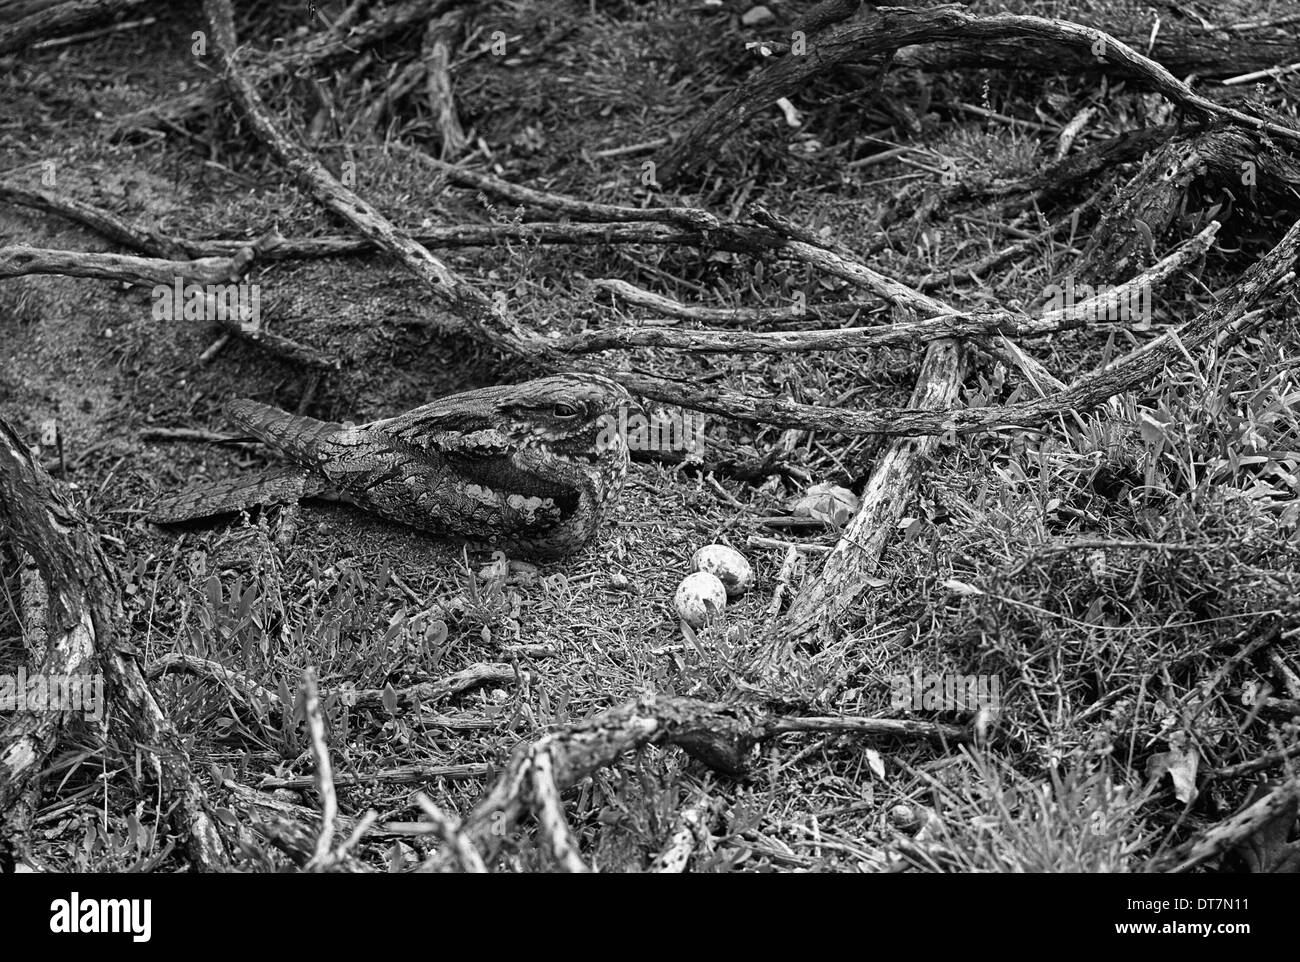 Ziegenmelker am Nest mit zwei Eiern - Staverton Park Suffolk. Im Jahre 1945 von Eric Hosking genommen Stockfoto